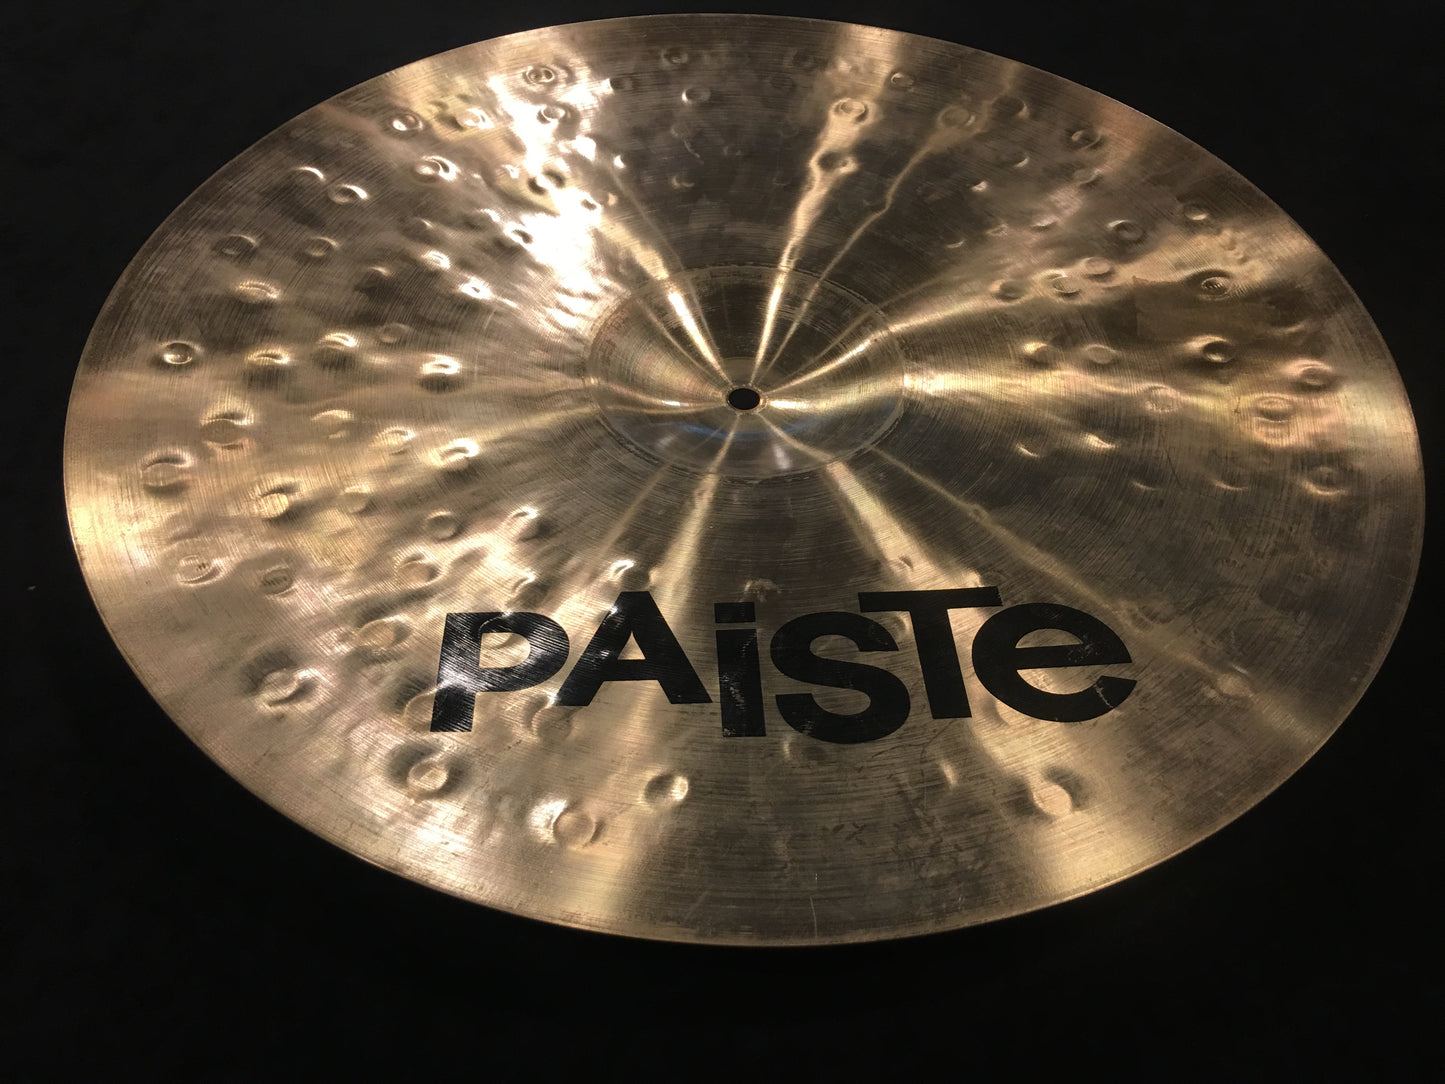 18" Paiste 1981 Sound Creation Dark Crash Cymbal 1782g #478